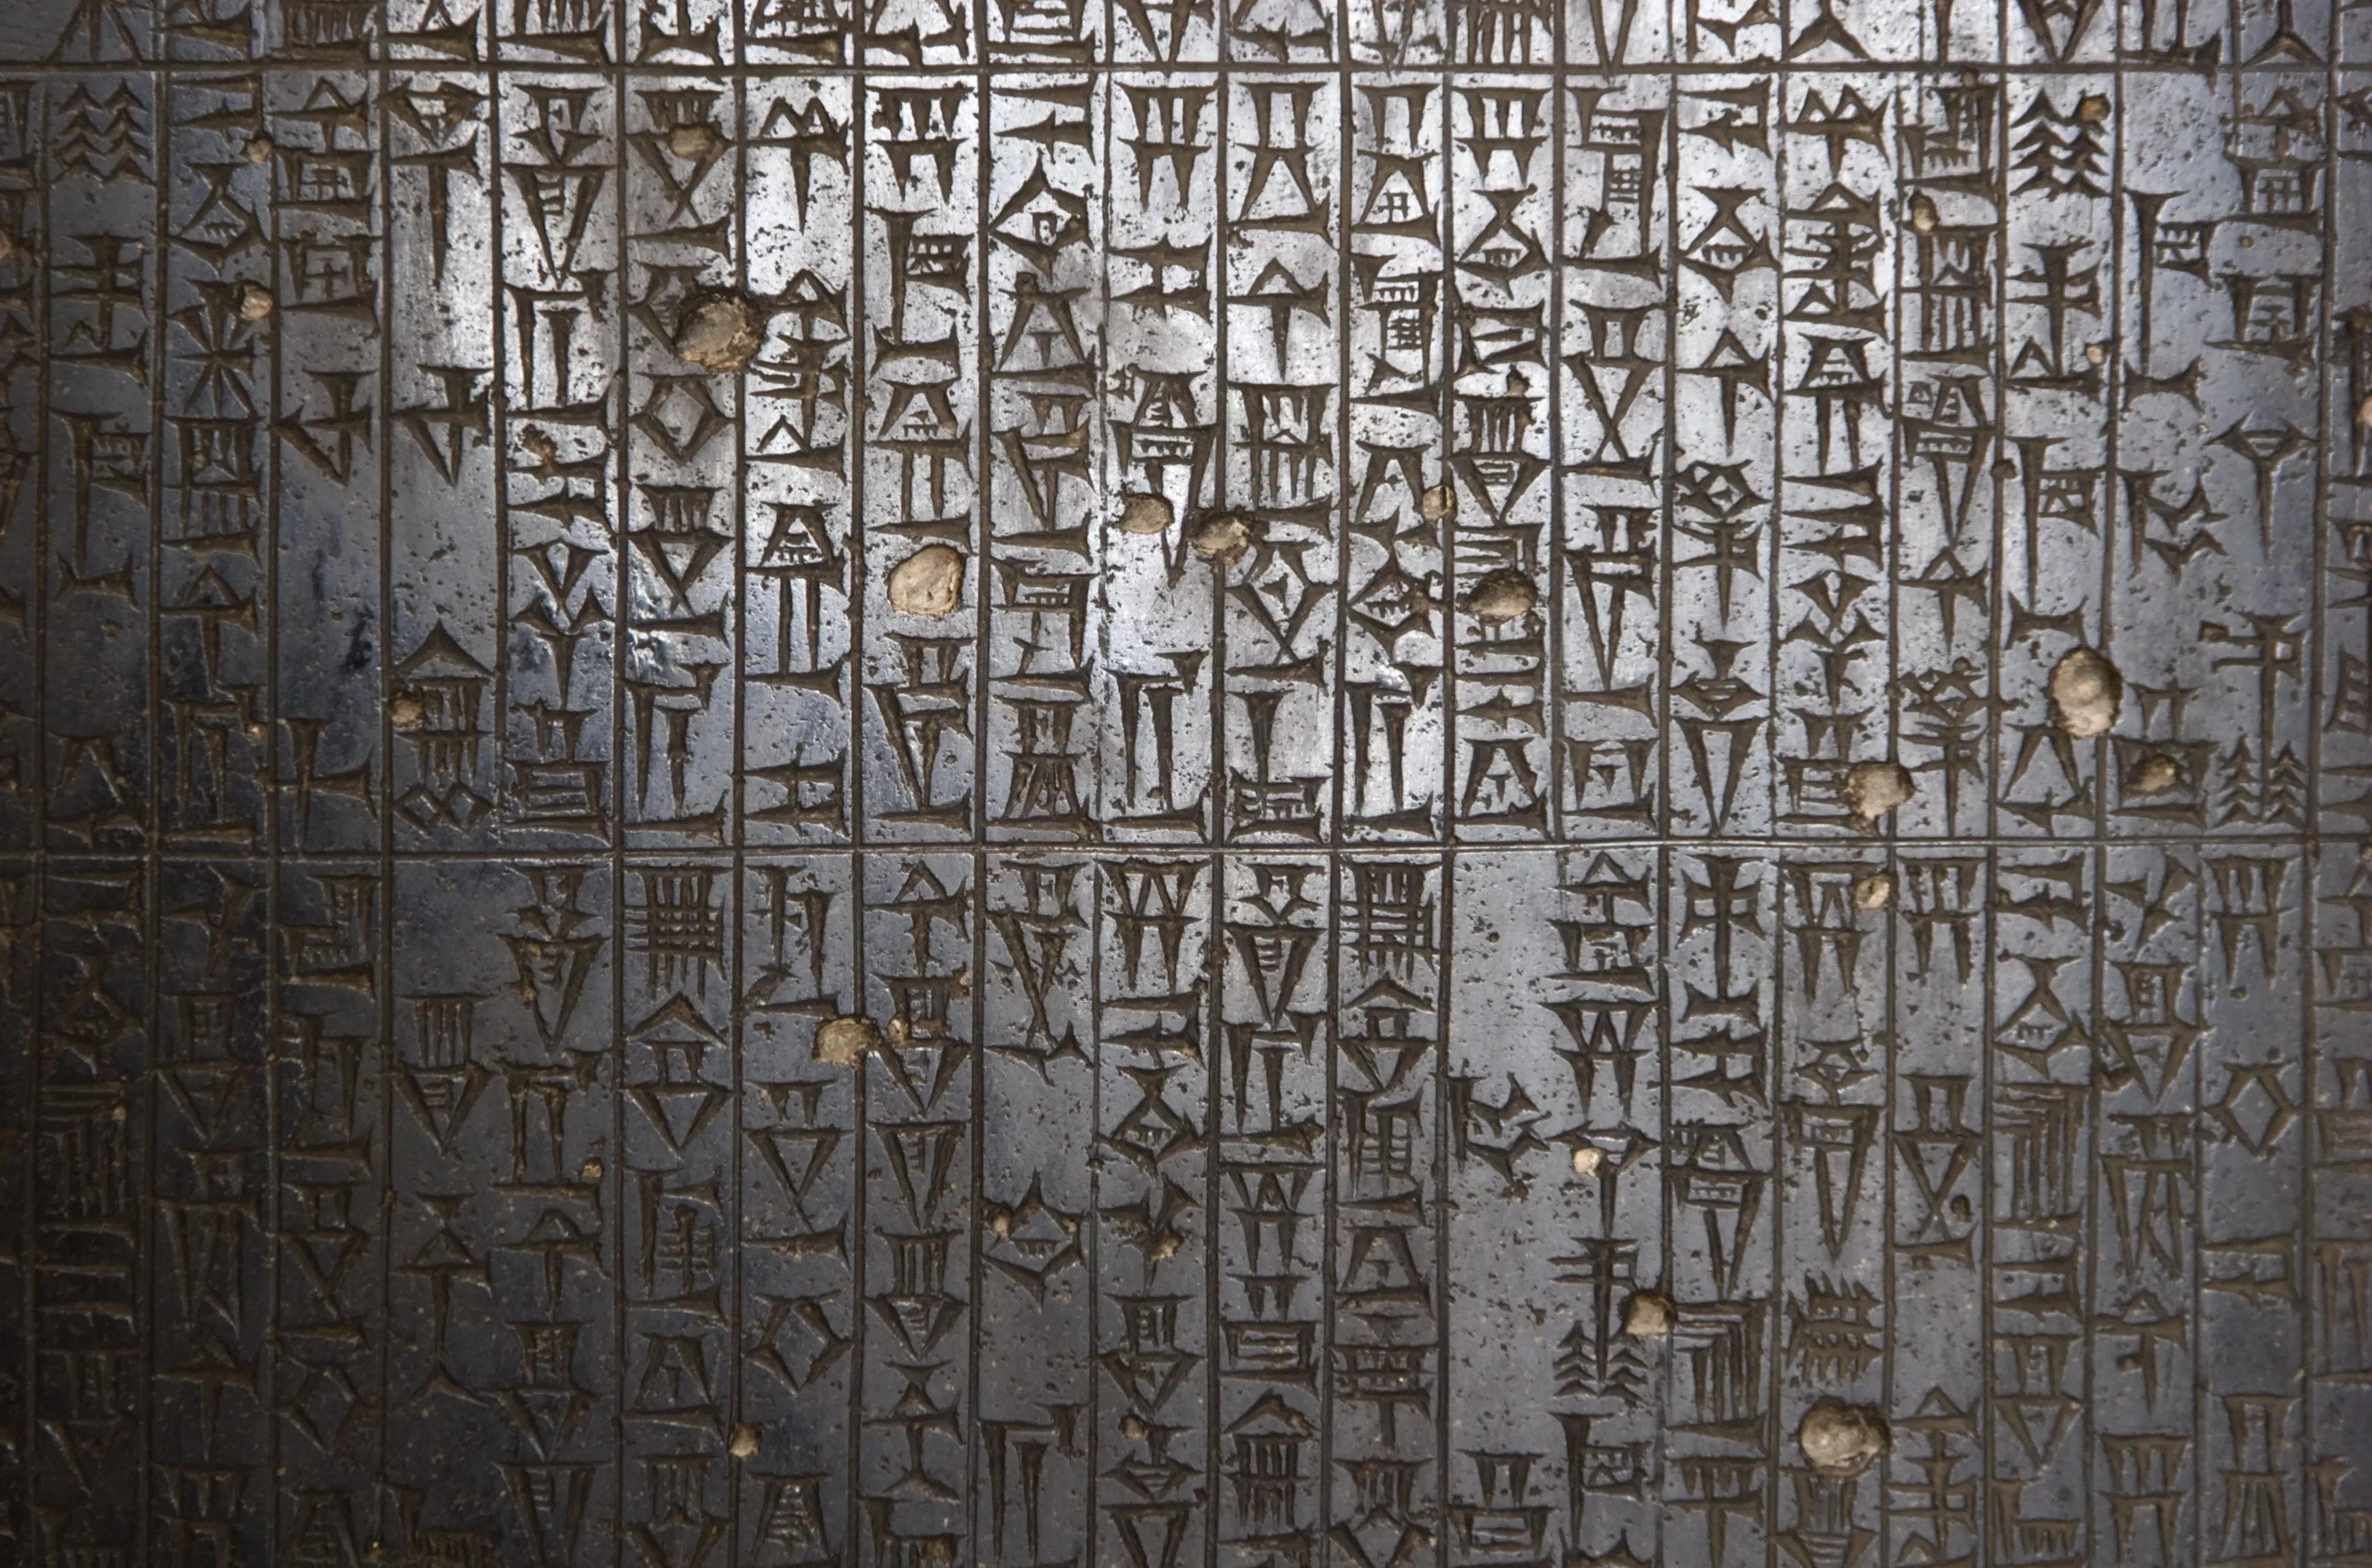 En el pròleg dels codis legals de cada ciutat, com el d'Hammurabi, cada rei explicava el seu programa de reformes i criticava l'oposició